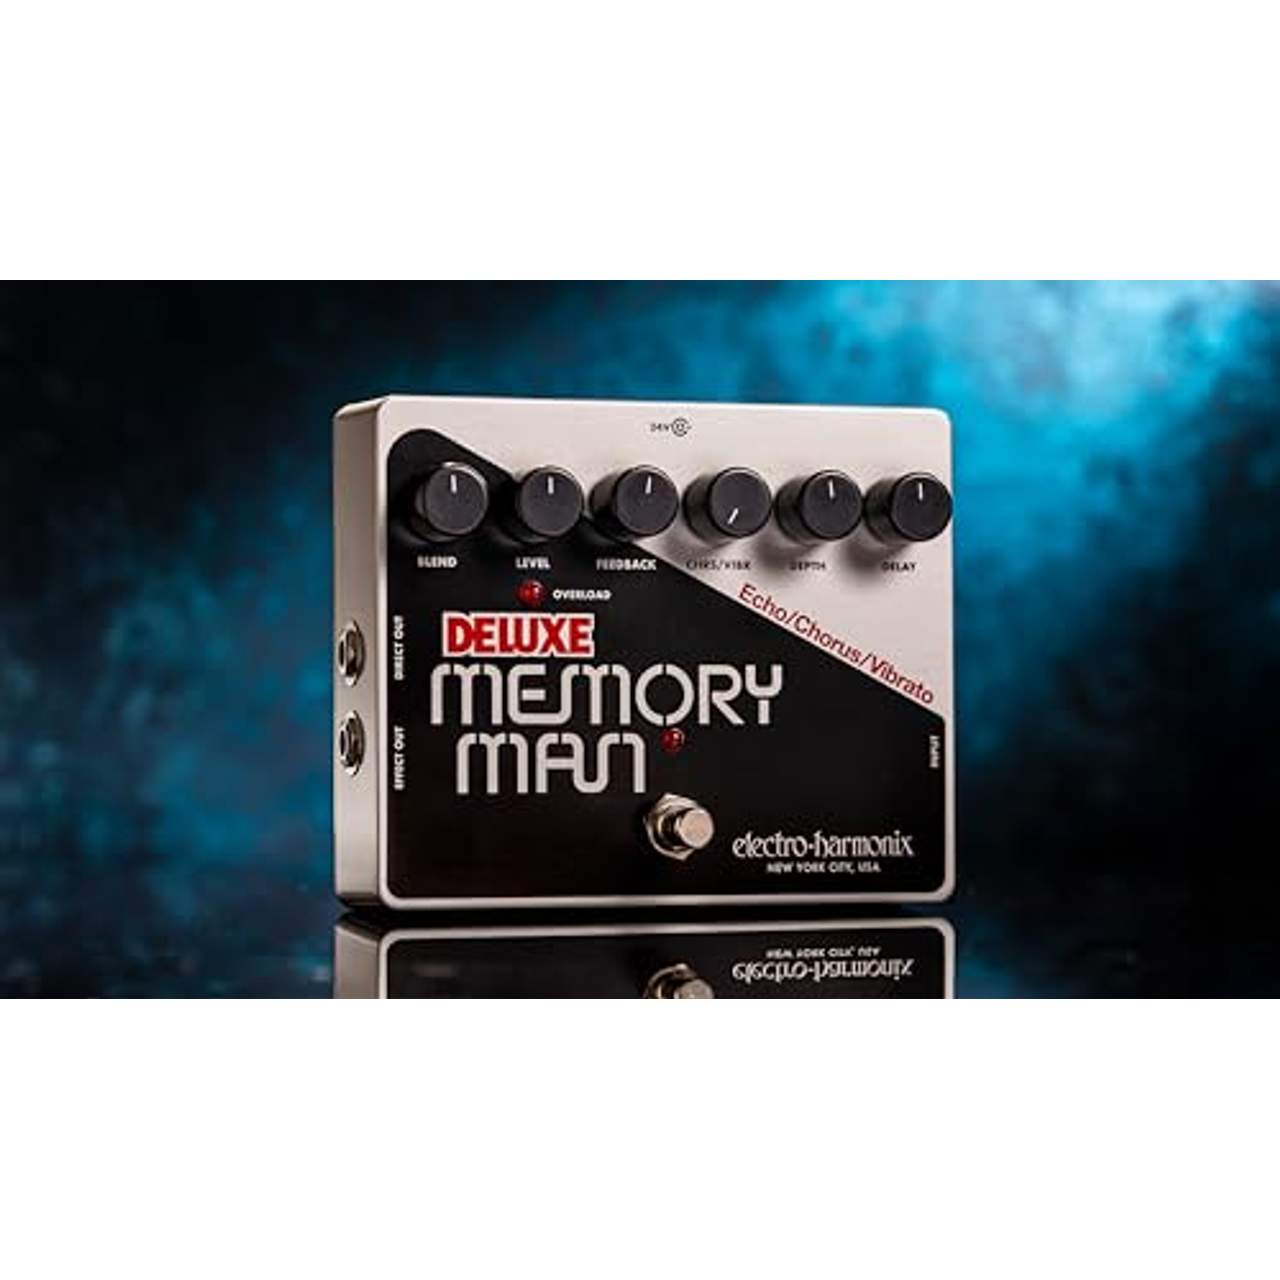 Electro Harmonix Deluxe Memory Man